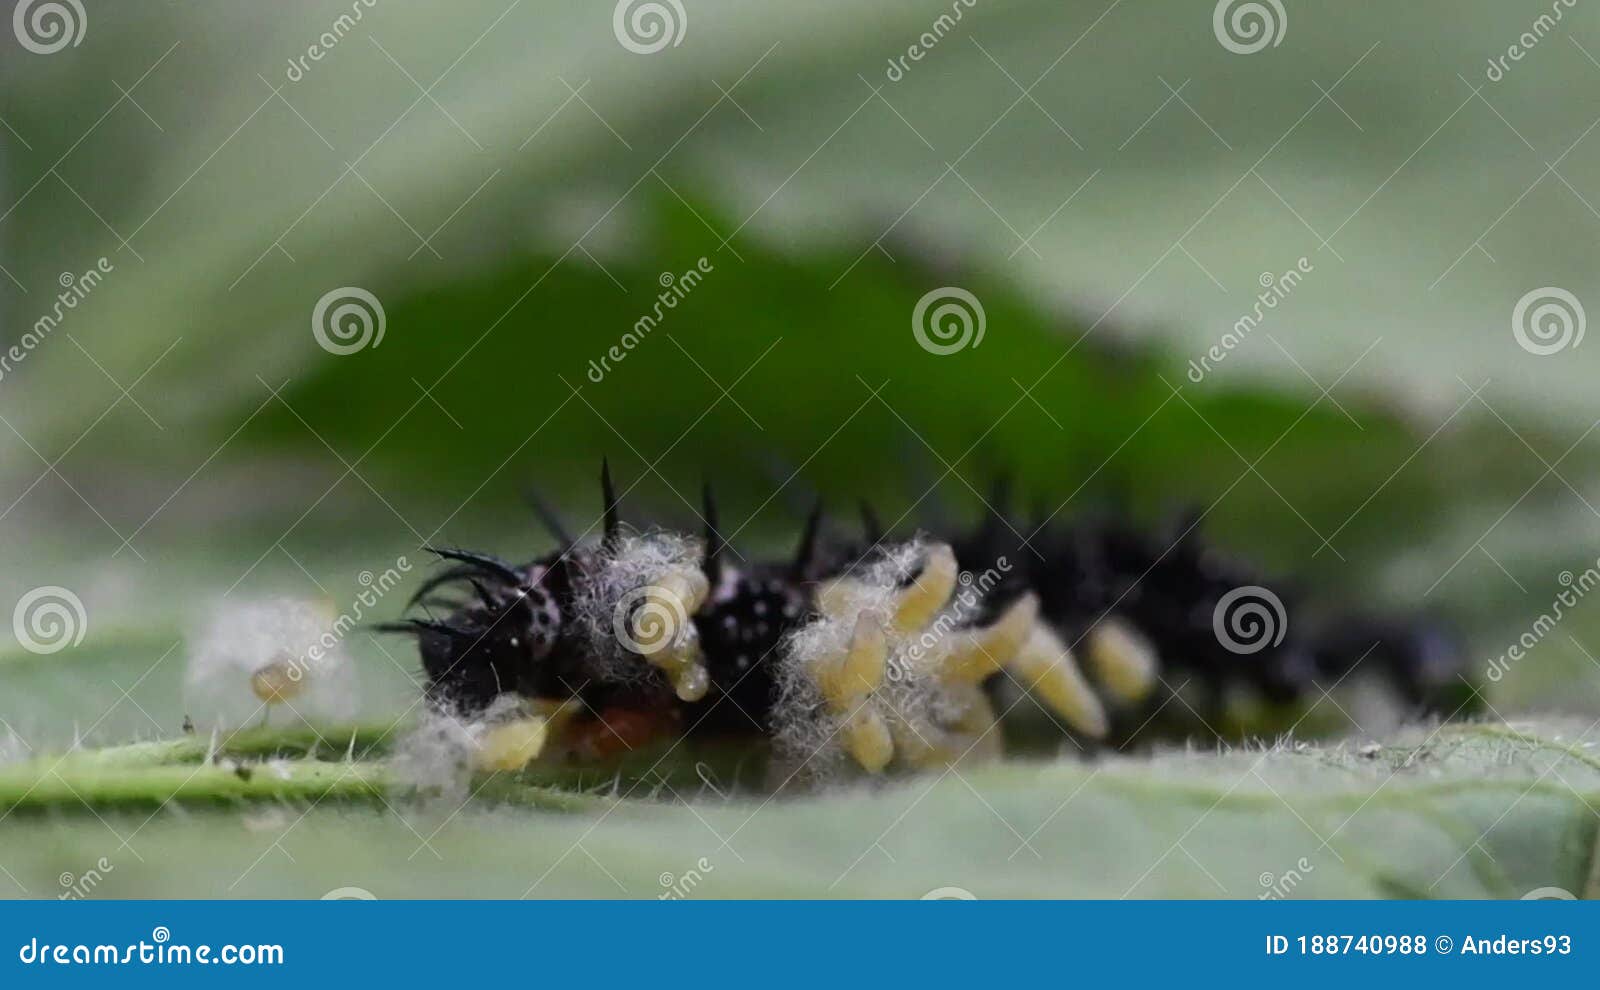 Larva Parasitoide De Avispa Que Emerge De La Oruga De Mariposa De Pavo